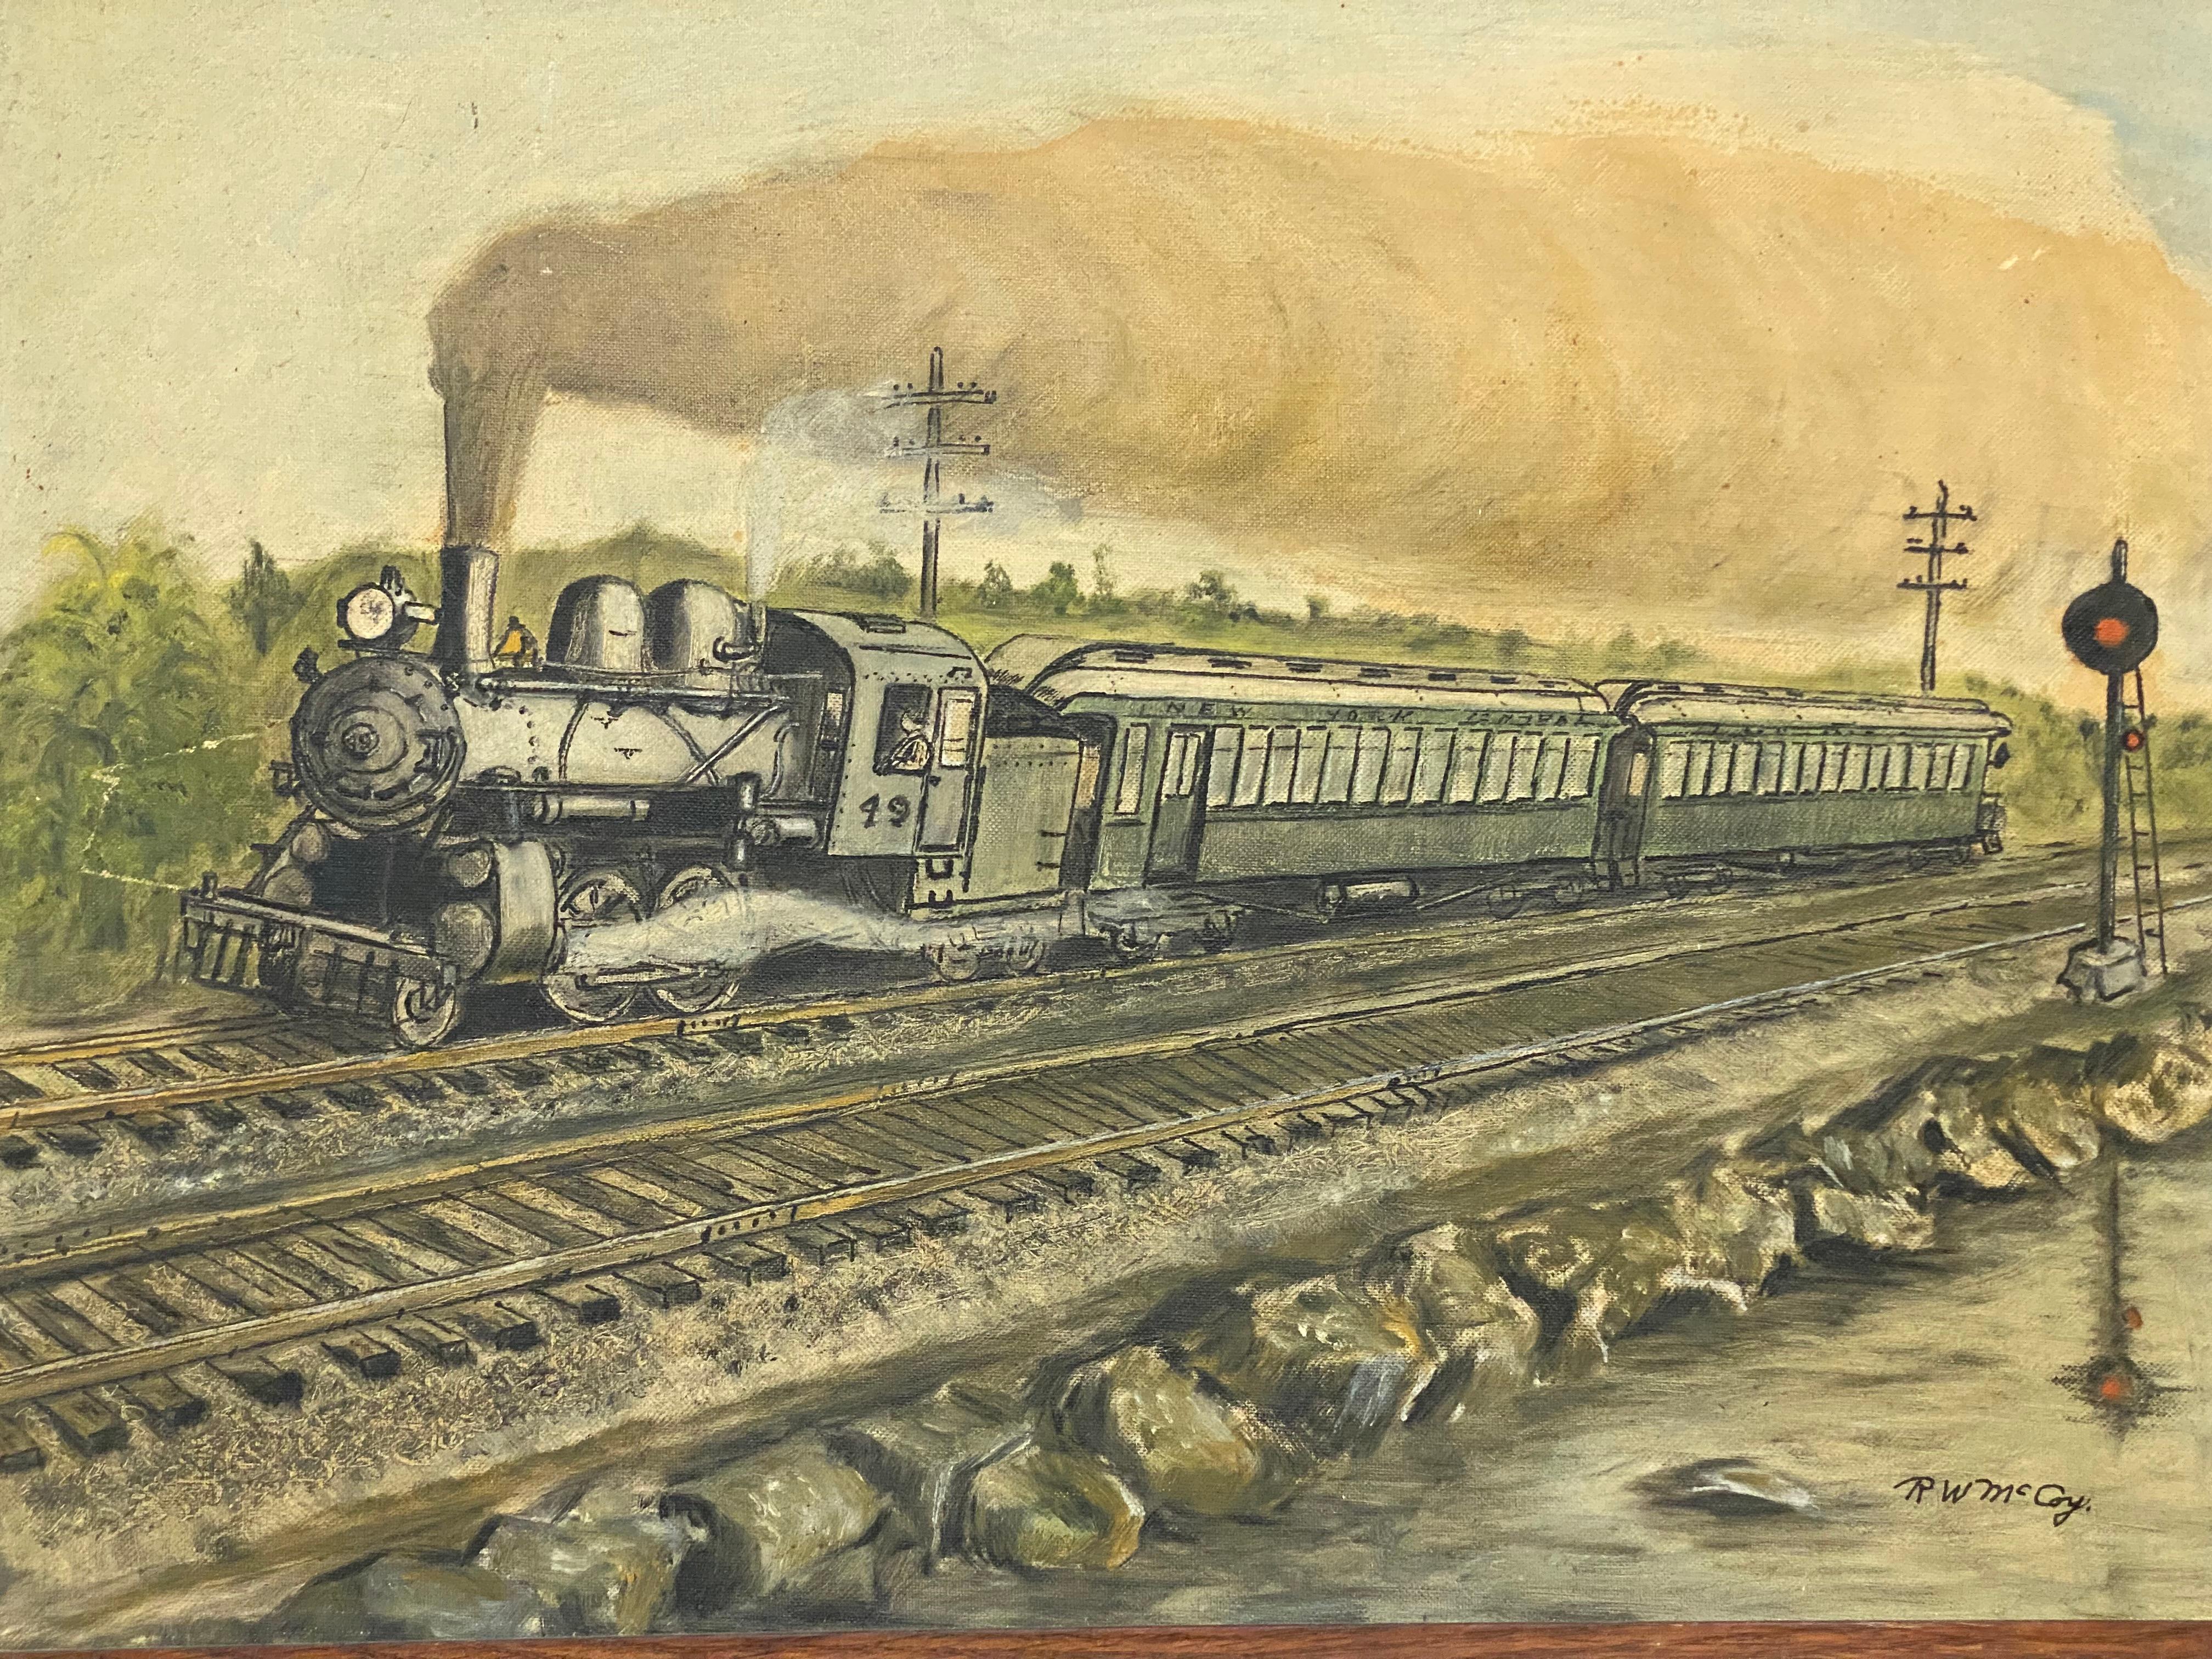 Dampflokomotive mit Kohlewagen und Wagen. Signiert R Wilson McCoy (1902-1961) unten rechts. McCoy war vor allem für seine Illustrationsarbeiten bekannt. Circa 1920-30. Ein schönes Stück lokaler Westchester- und New York Central-Eisenbahngeschichte.